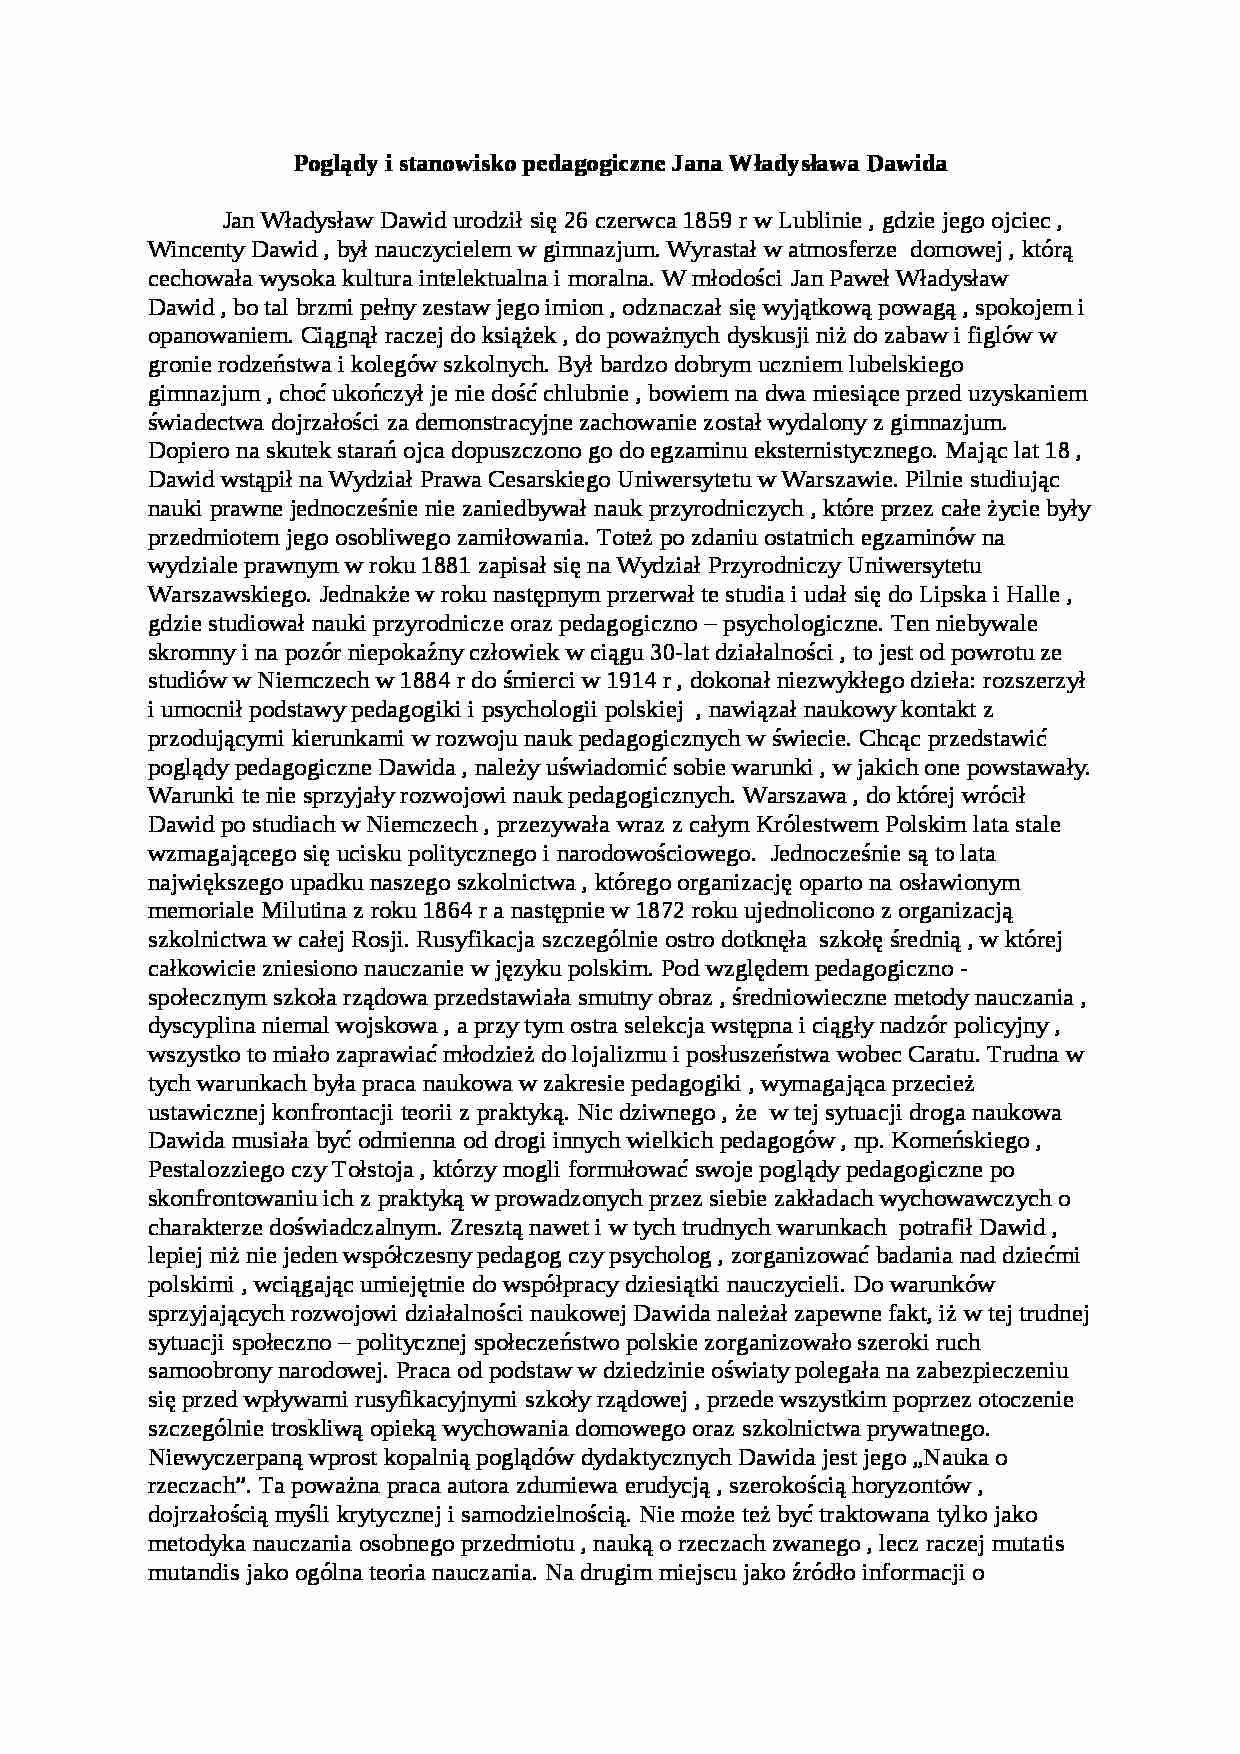 Poglądy i stanowisko pedagogiczne Jana Władysława Dawida- pedagogika - strona 1